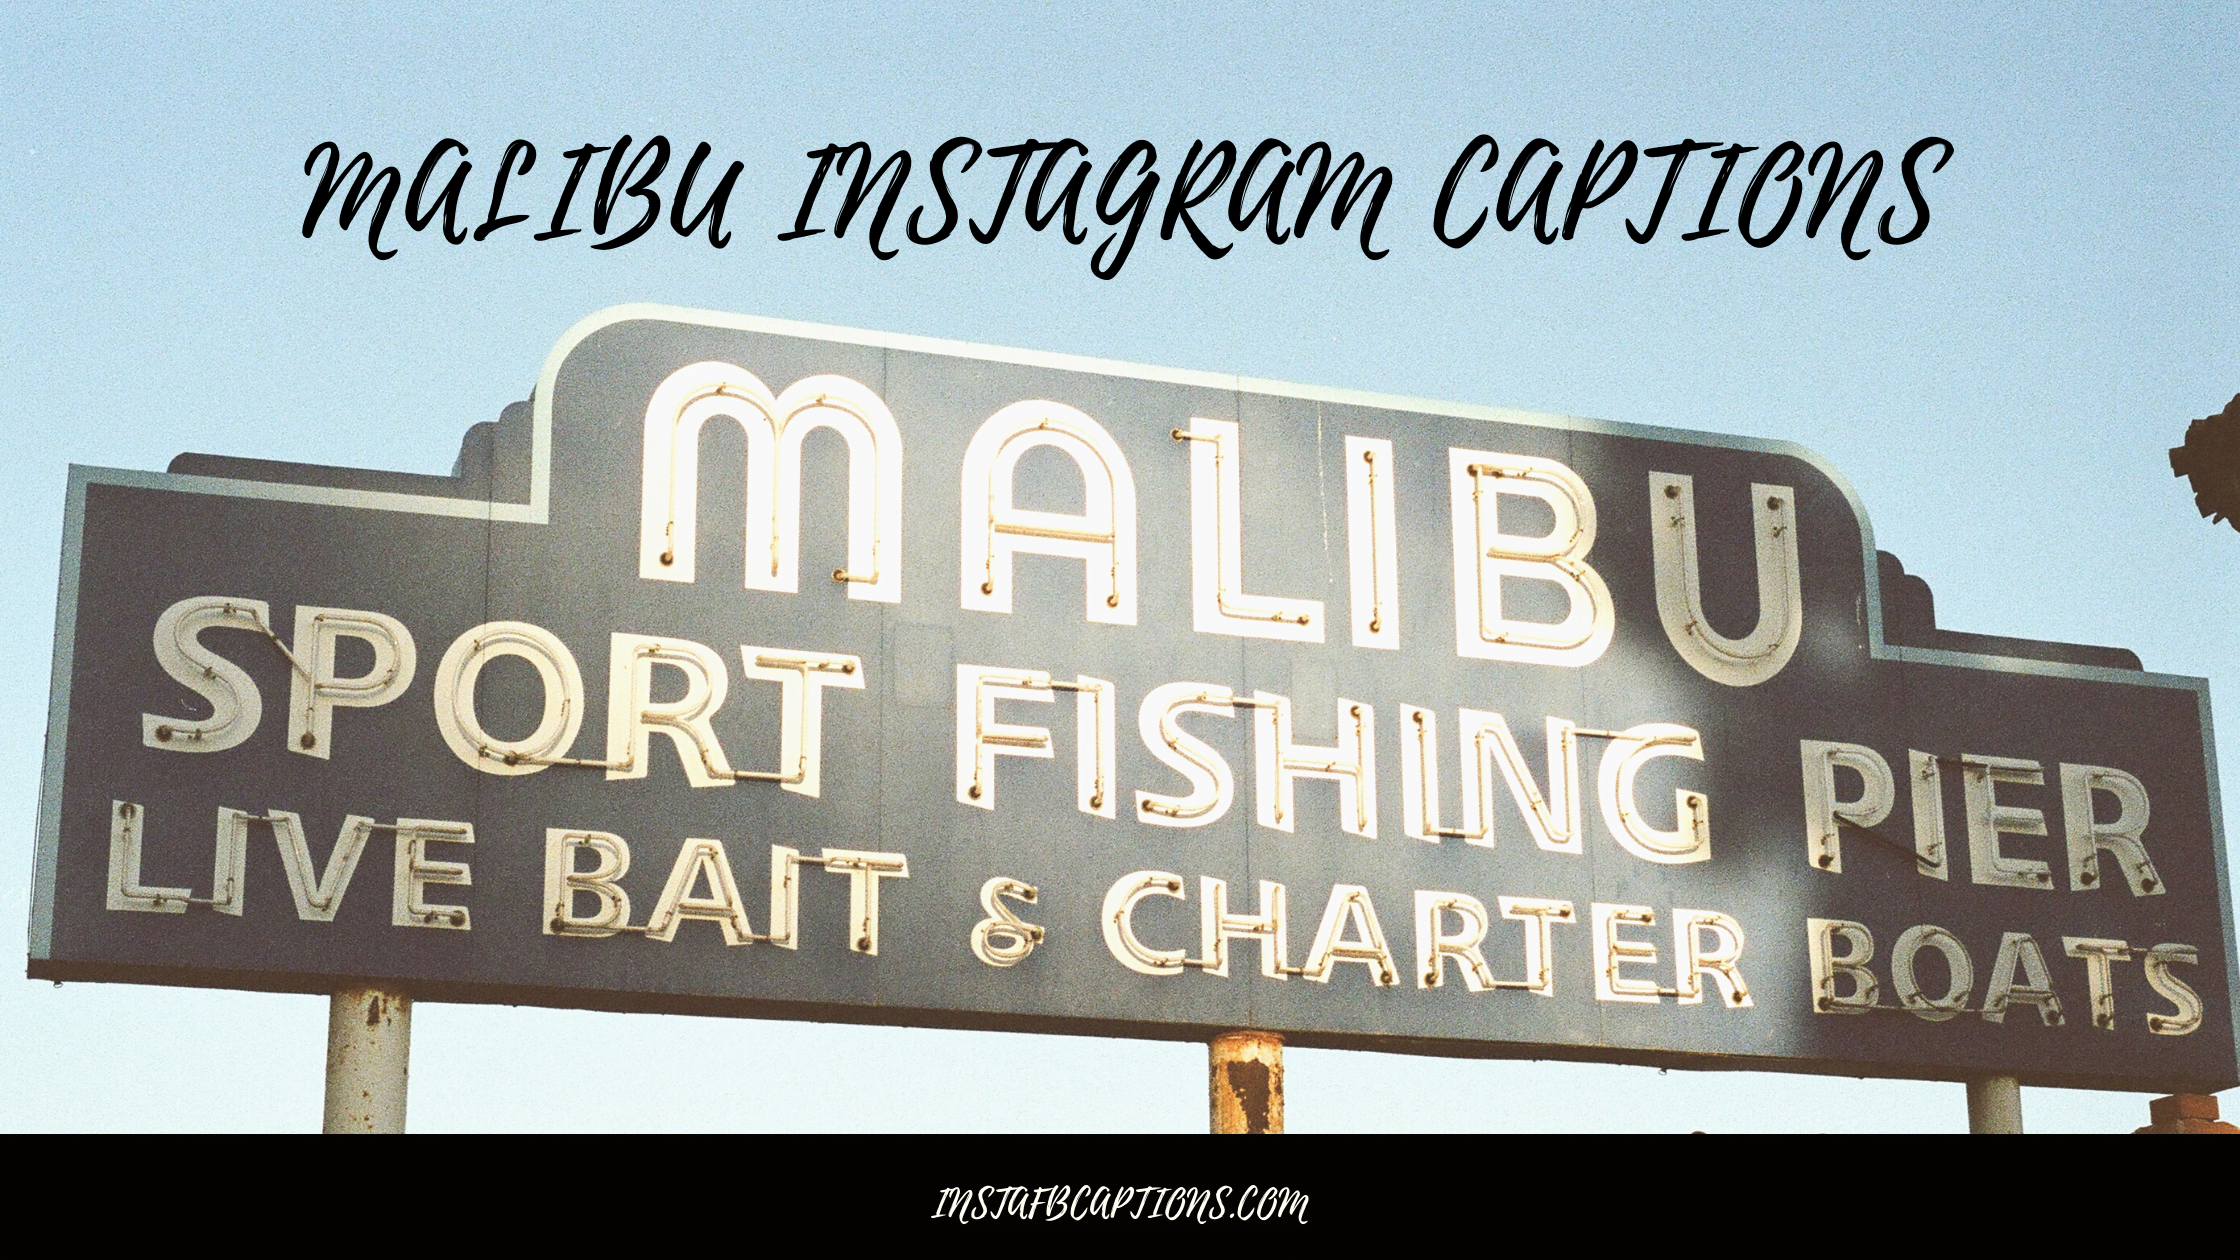 Malibu Instagram Captions  - Malibu Instagram Captions - 82 MALIBU Instagram Captions Quotes Hashtags in 2022